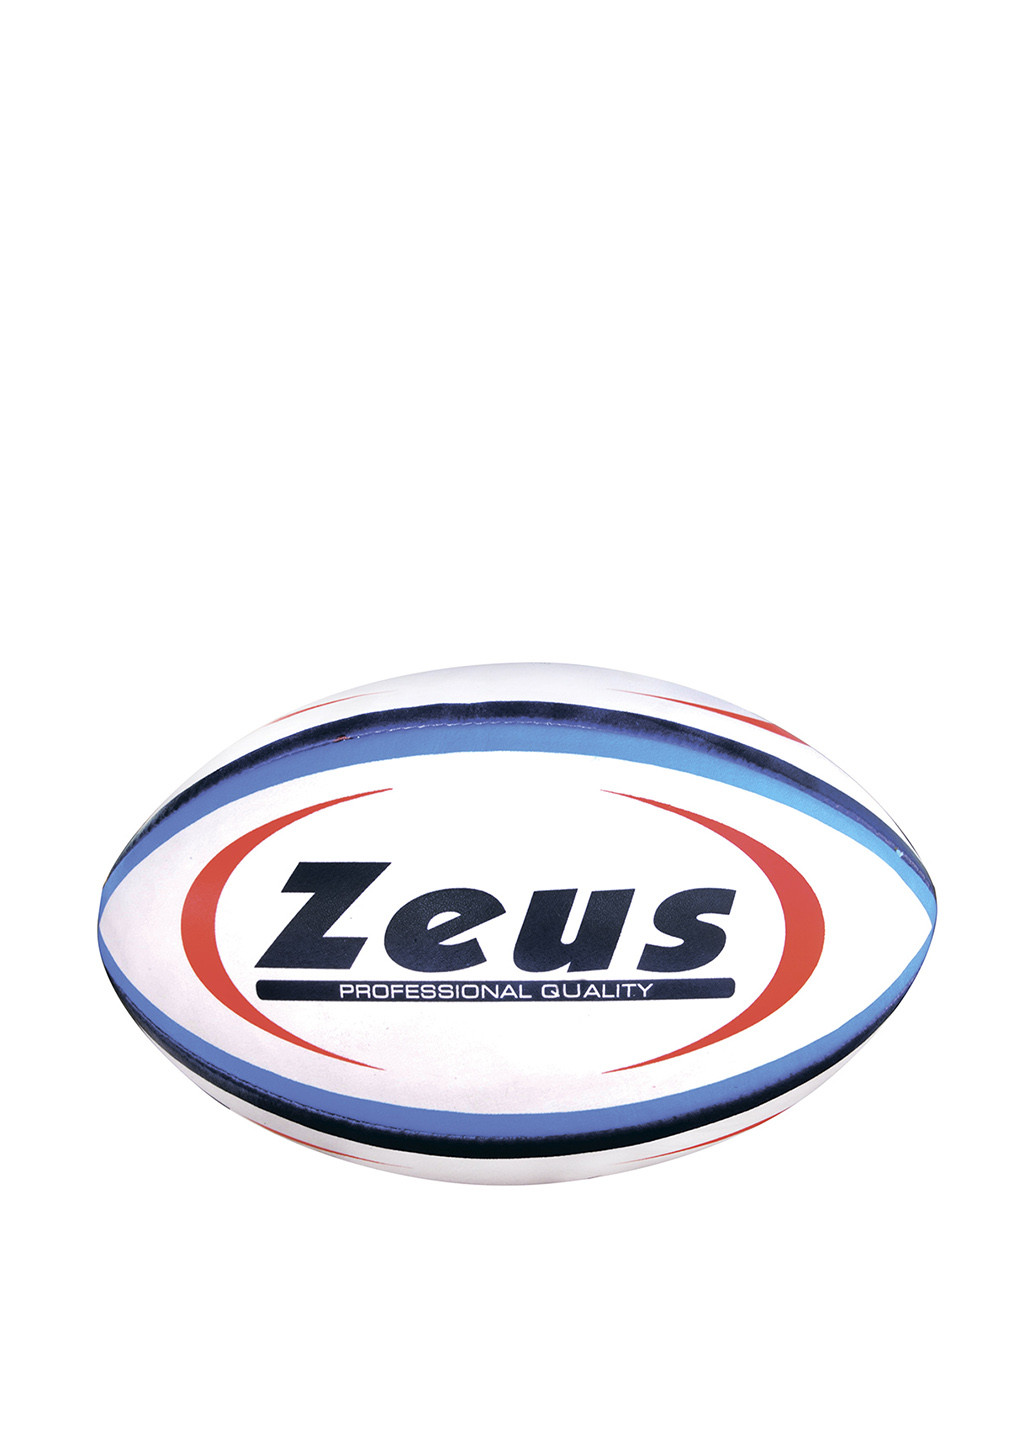 Мяч для регби Zeus (131480535)